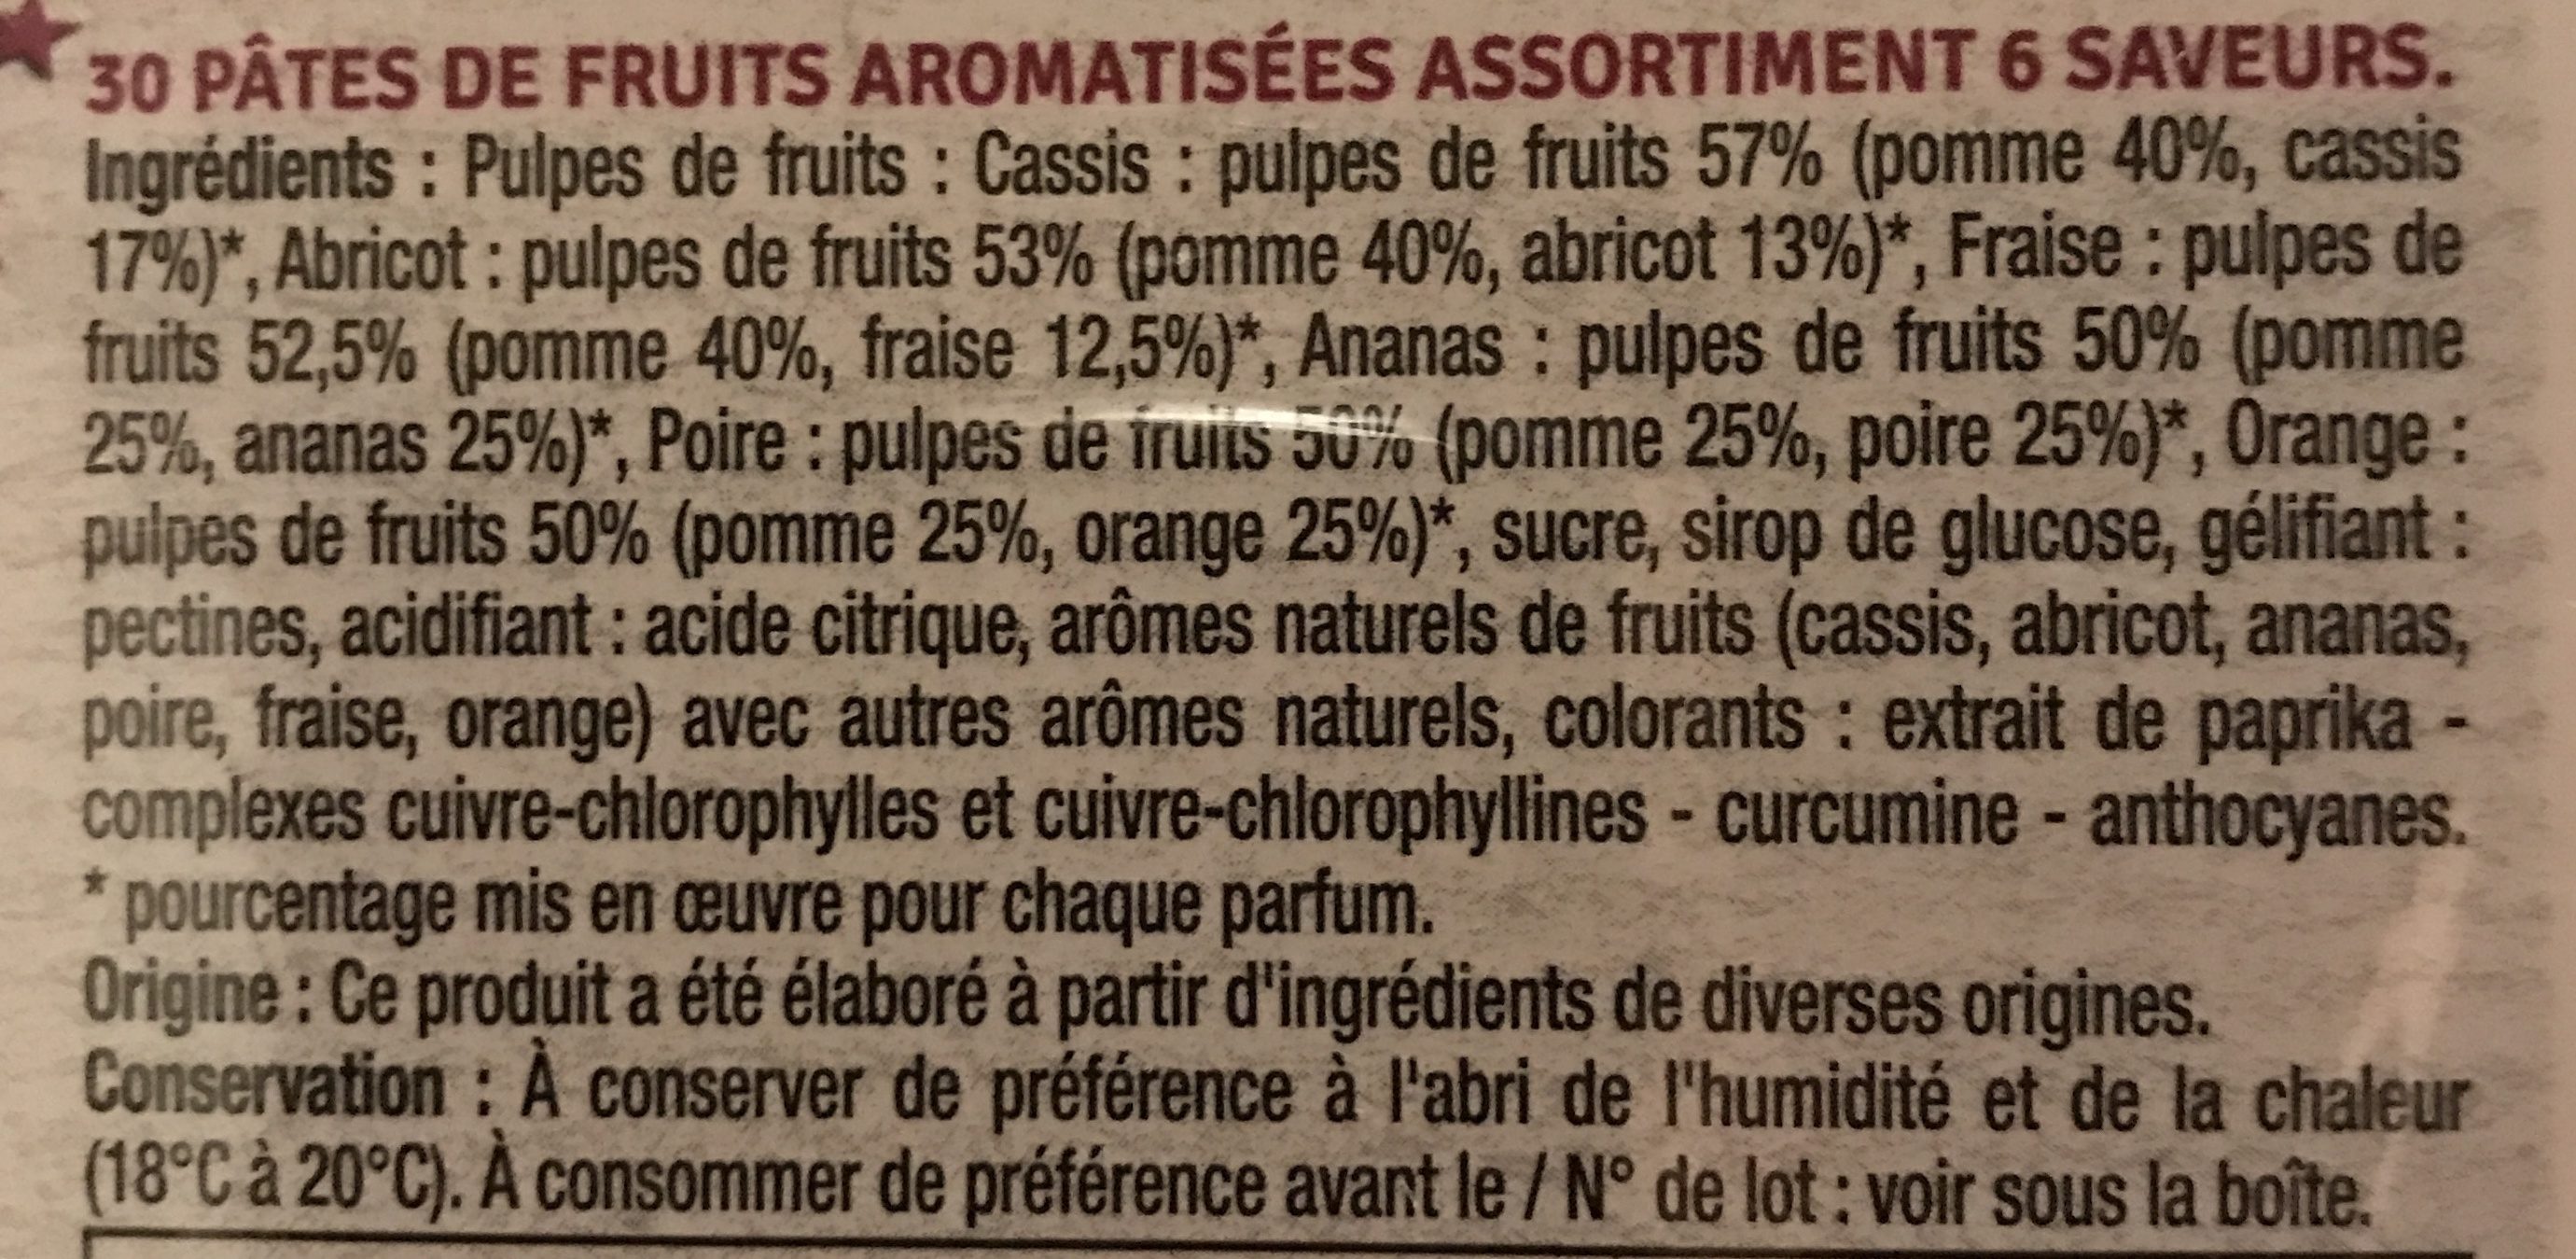 Pâtes de fruits aromatisées - Ingredients - fr